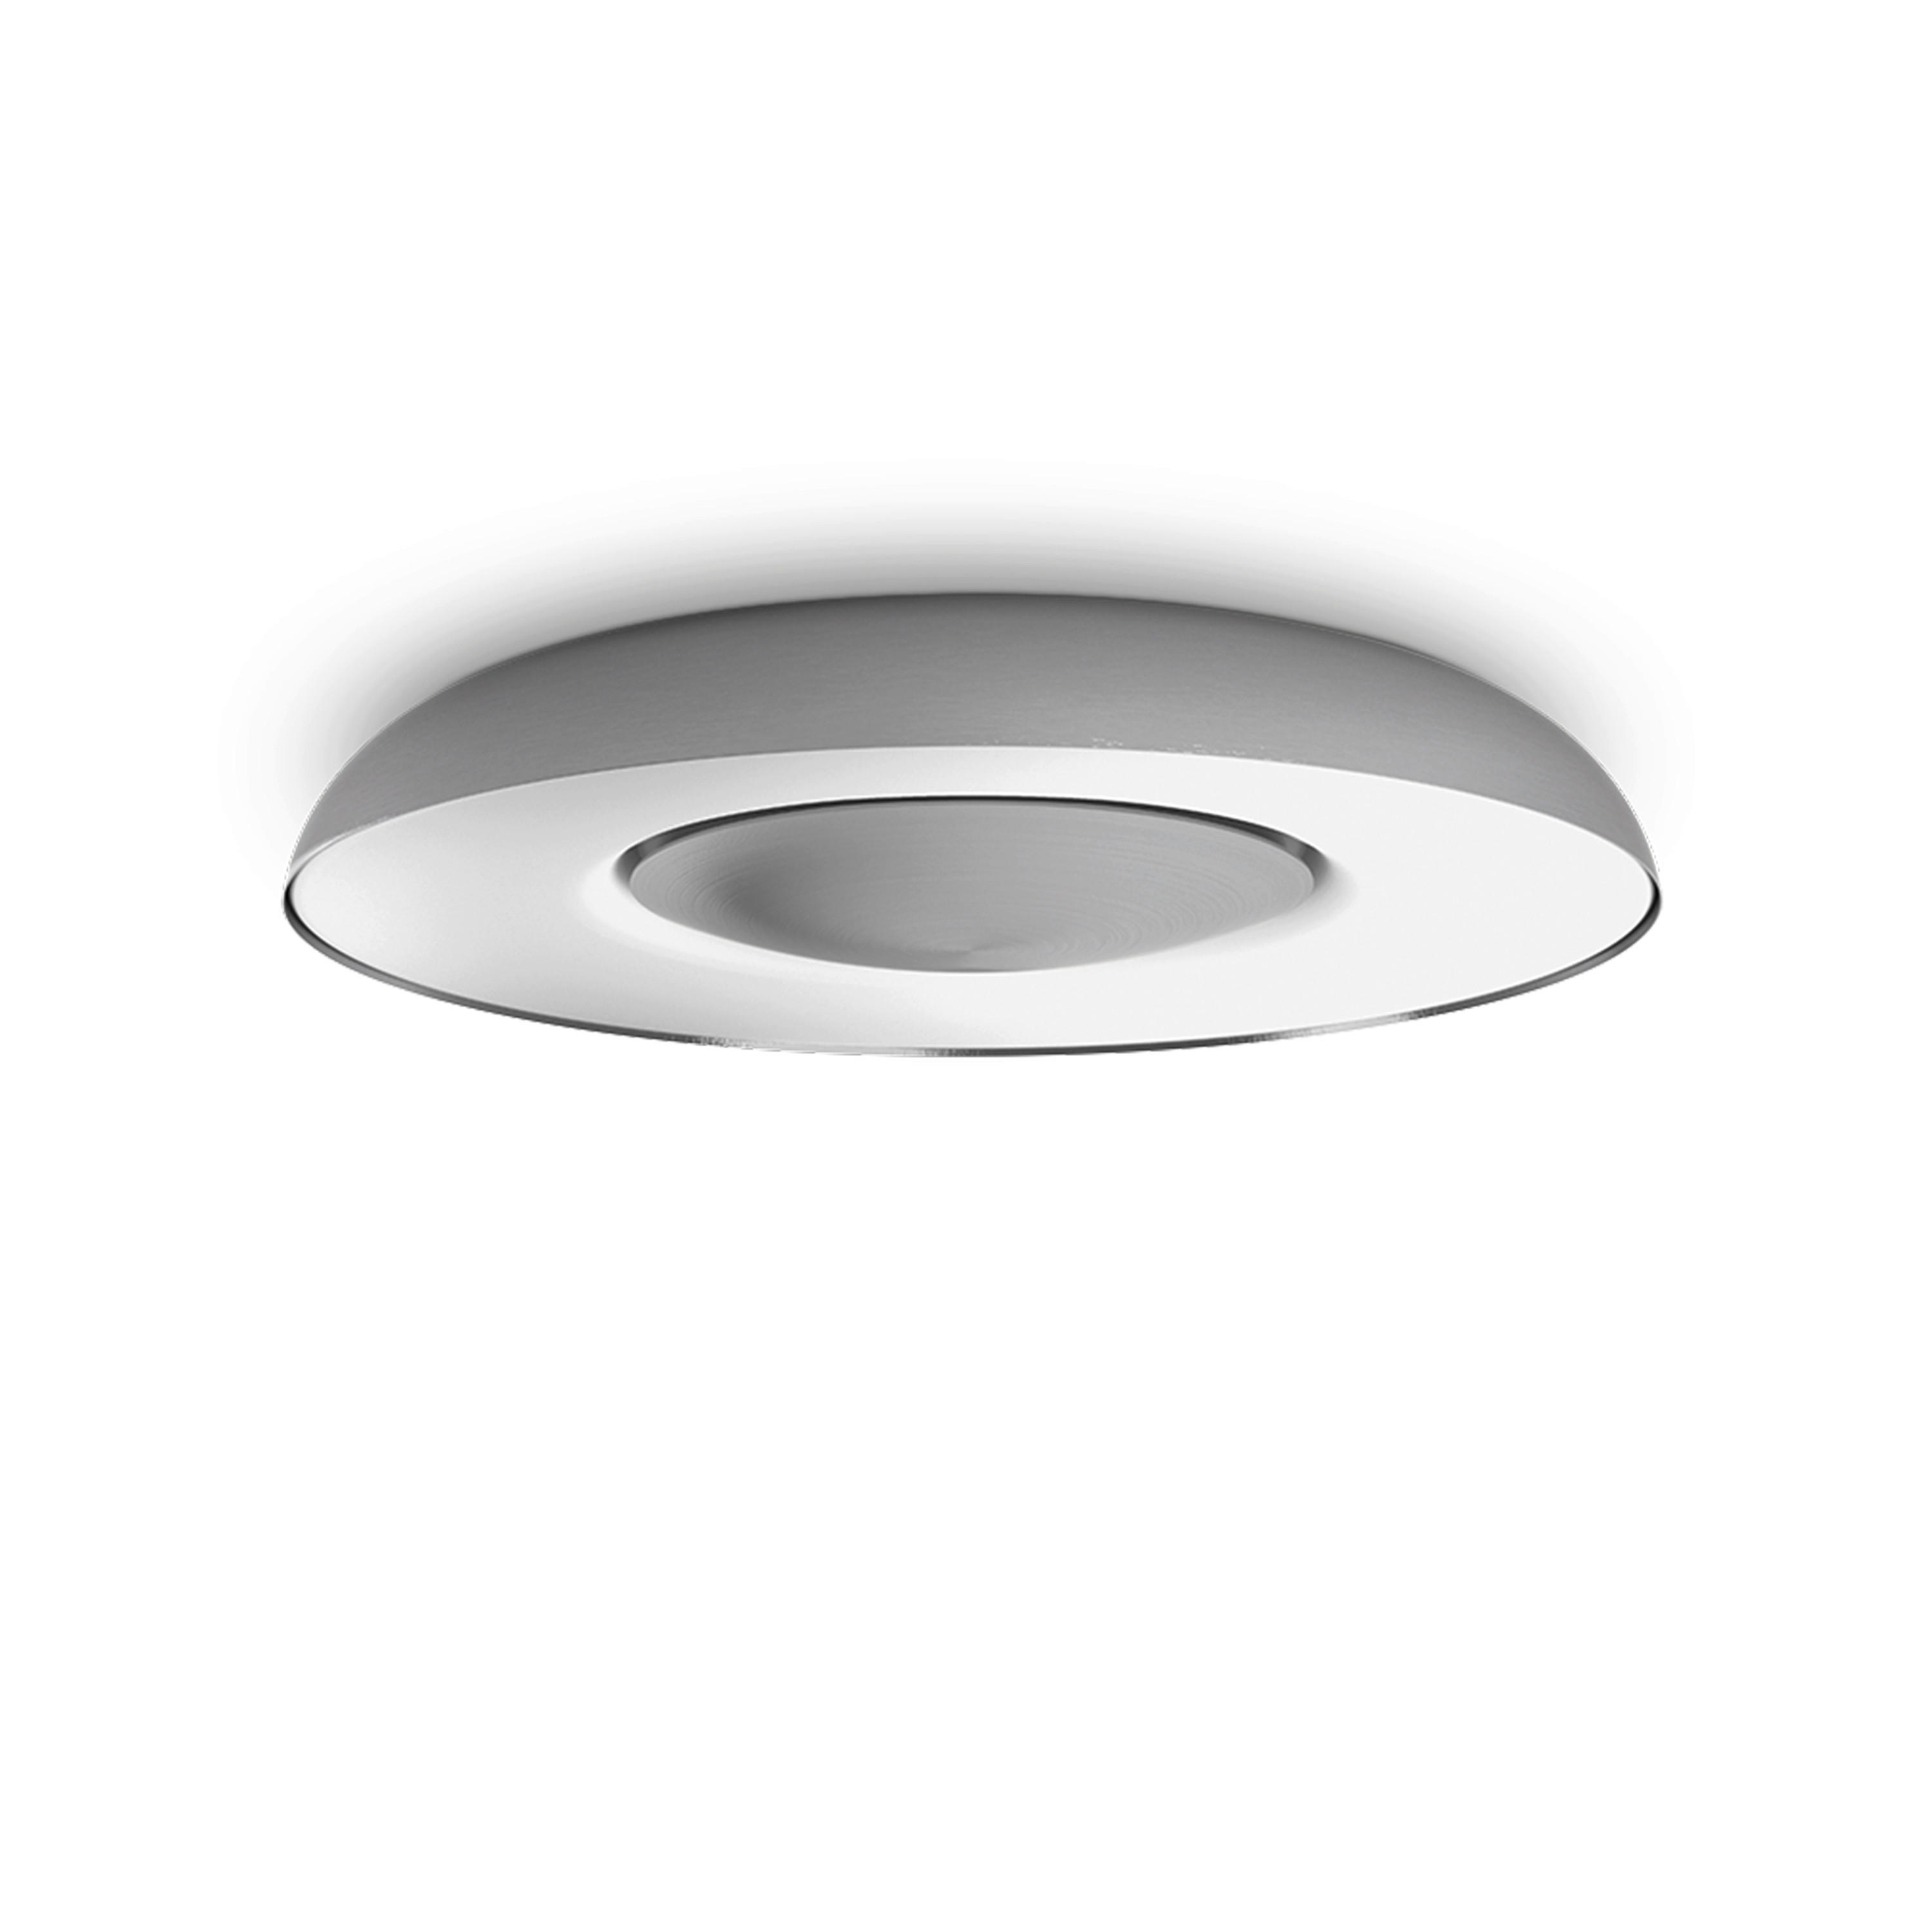 LED-DECKENLEUCHTE White Ambiance Still 39,1/7,1 cm   - Silberfarben, Design, Metall (39,1/7,1cm) - Philips HUE